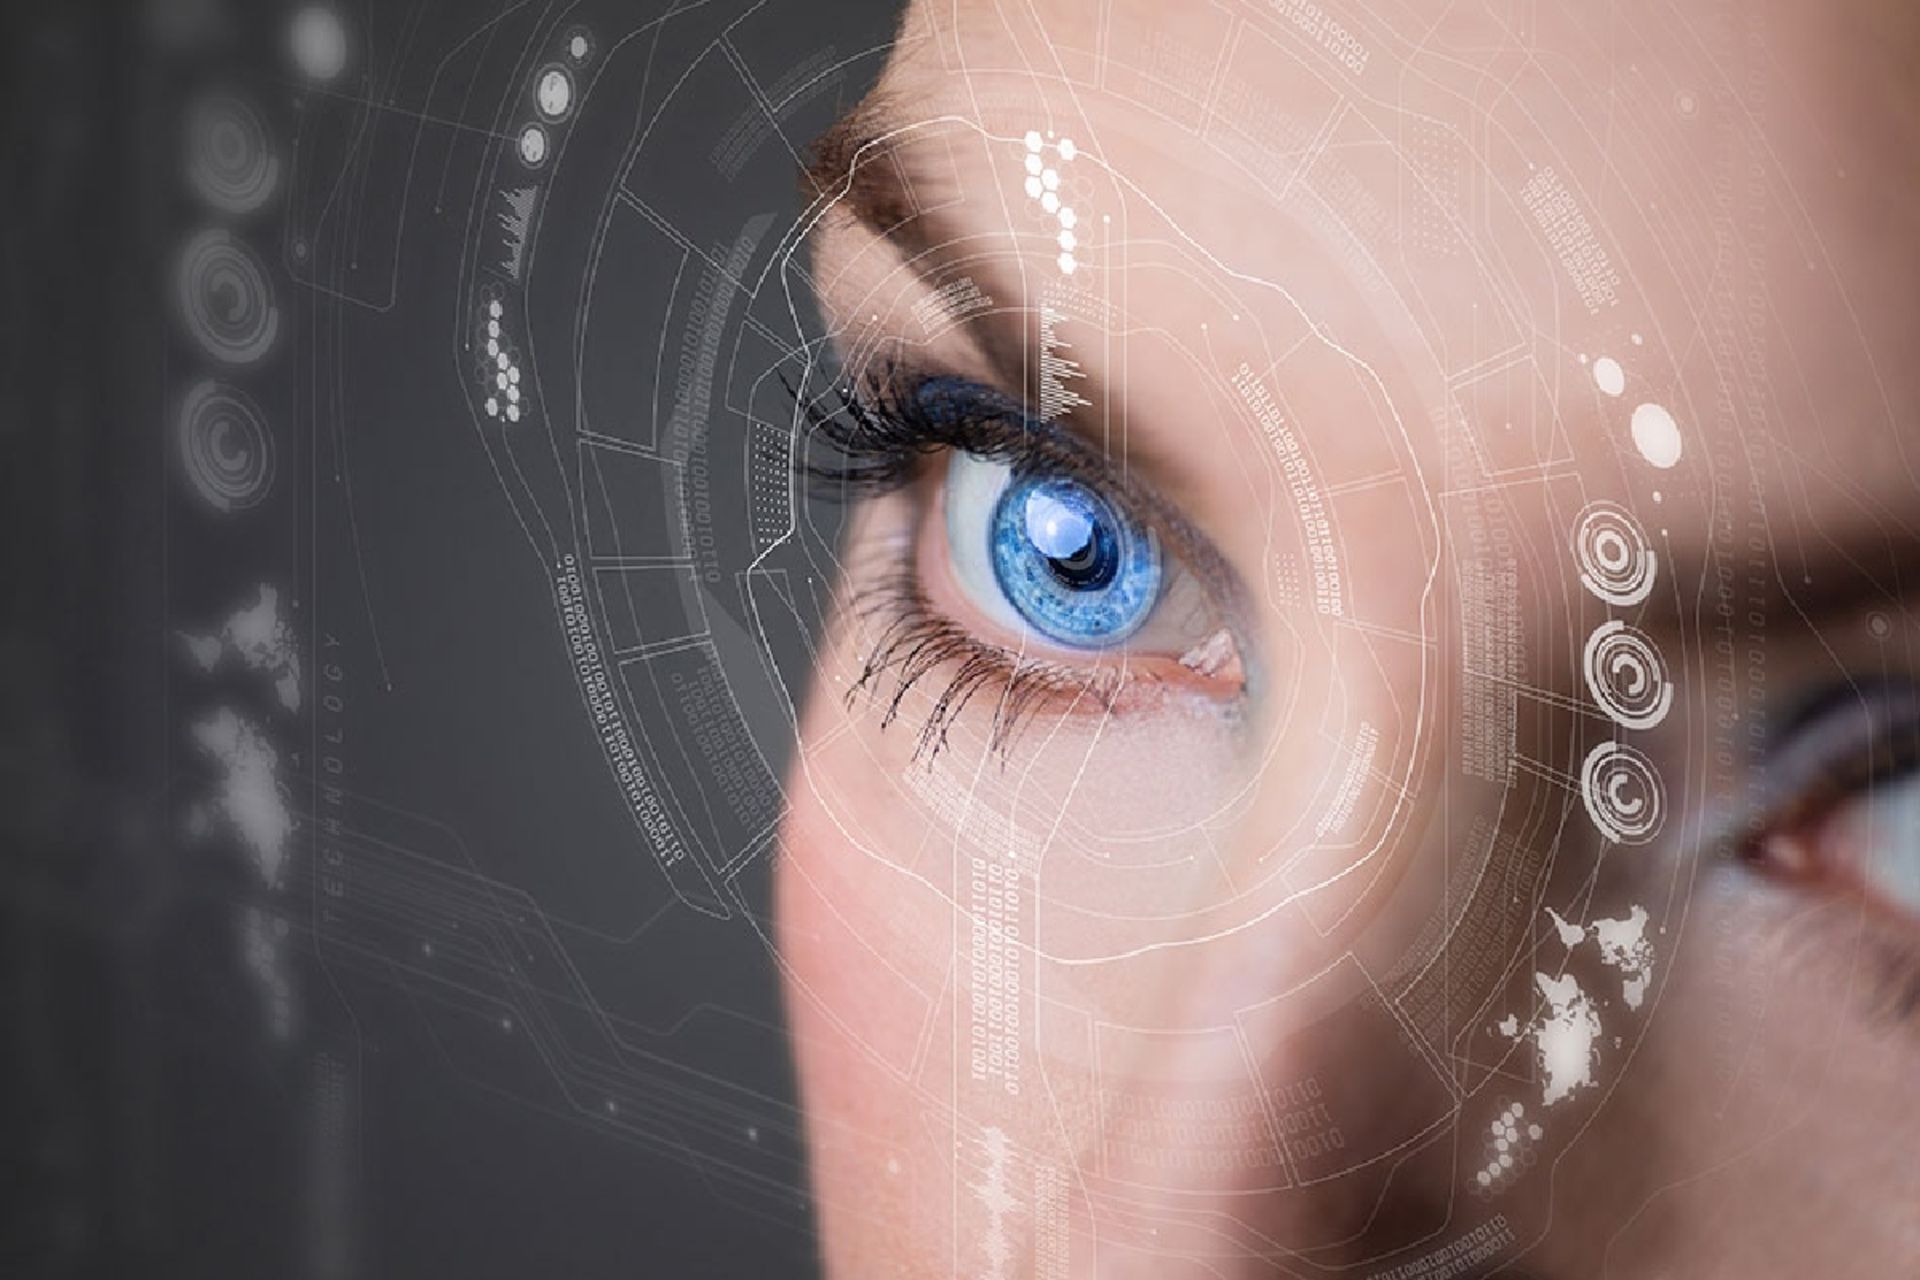 مفهومی از لنزهای چشمی مبتنی بر فناوری واقعیت افزوده